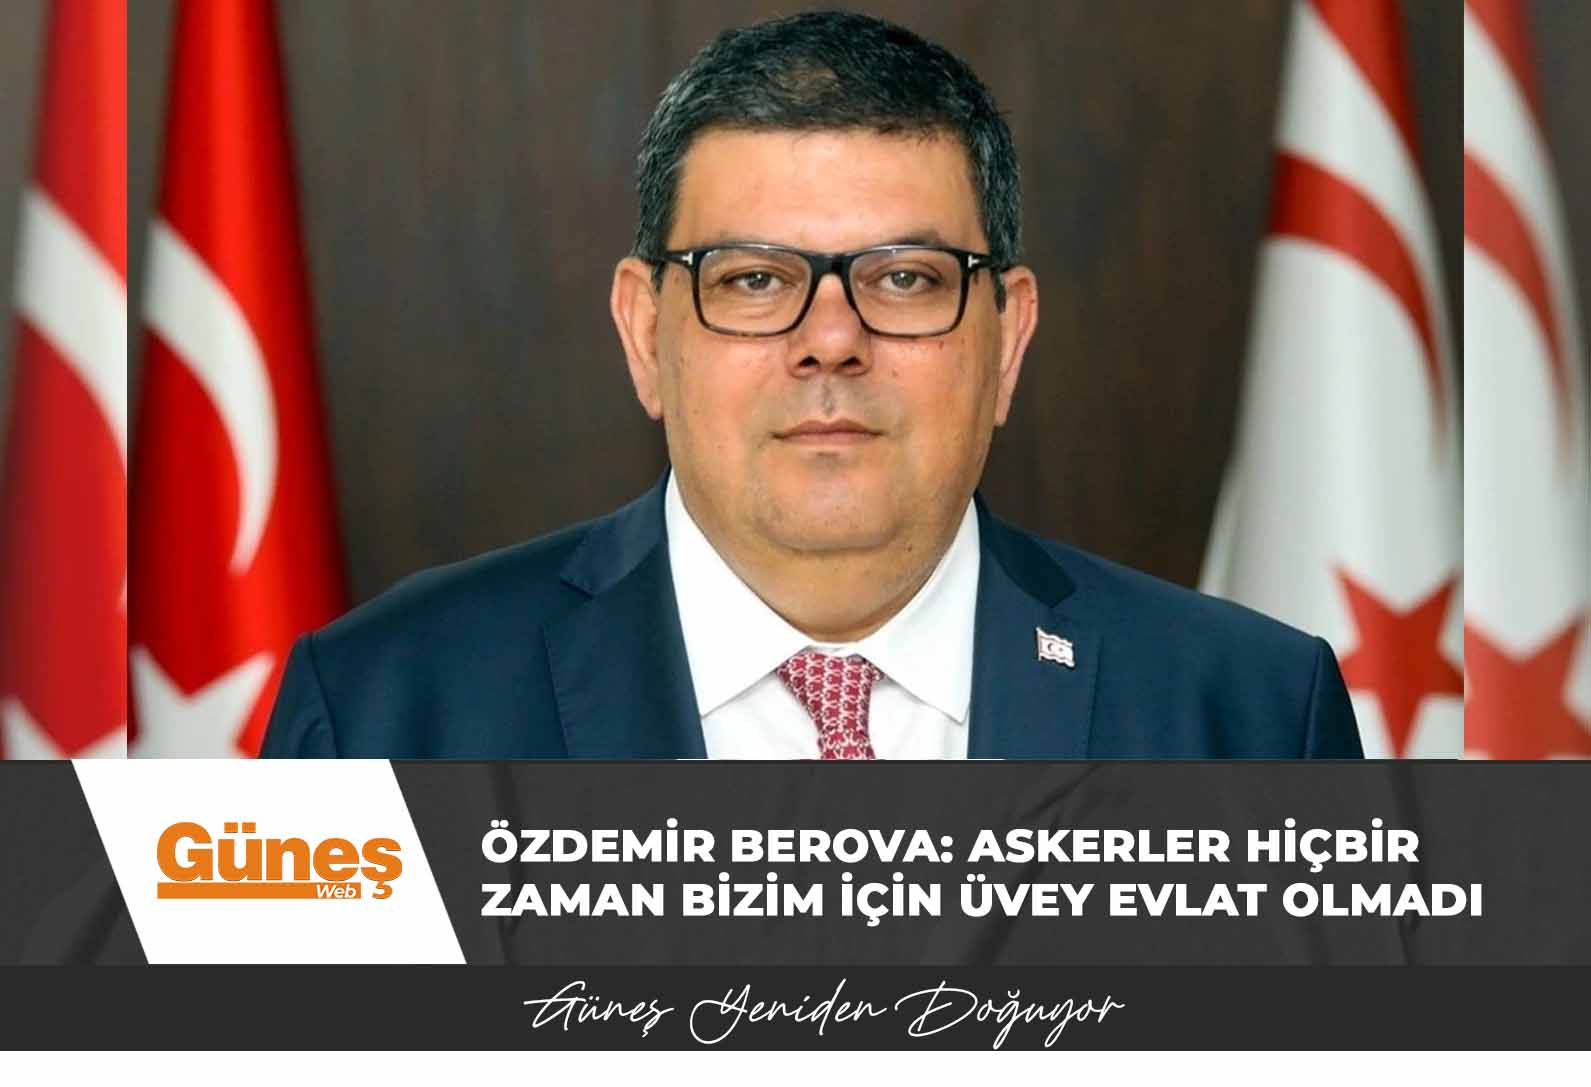 Özdemir Berova: Askerler hiçbir zaman bizim için üvey evlat olmadı